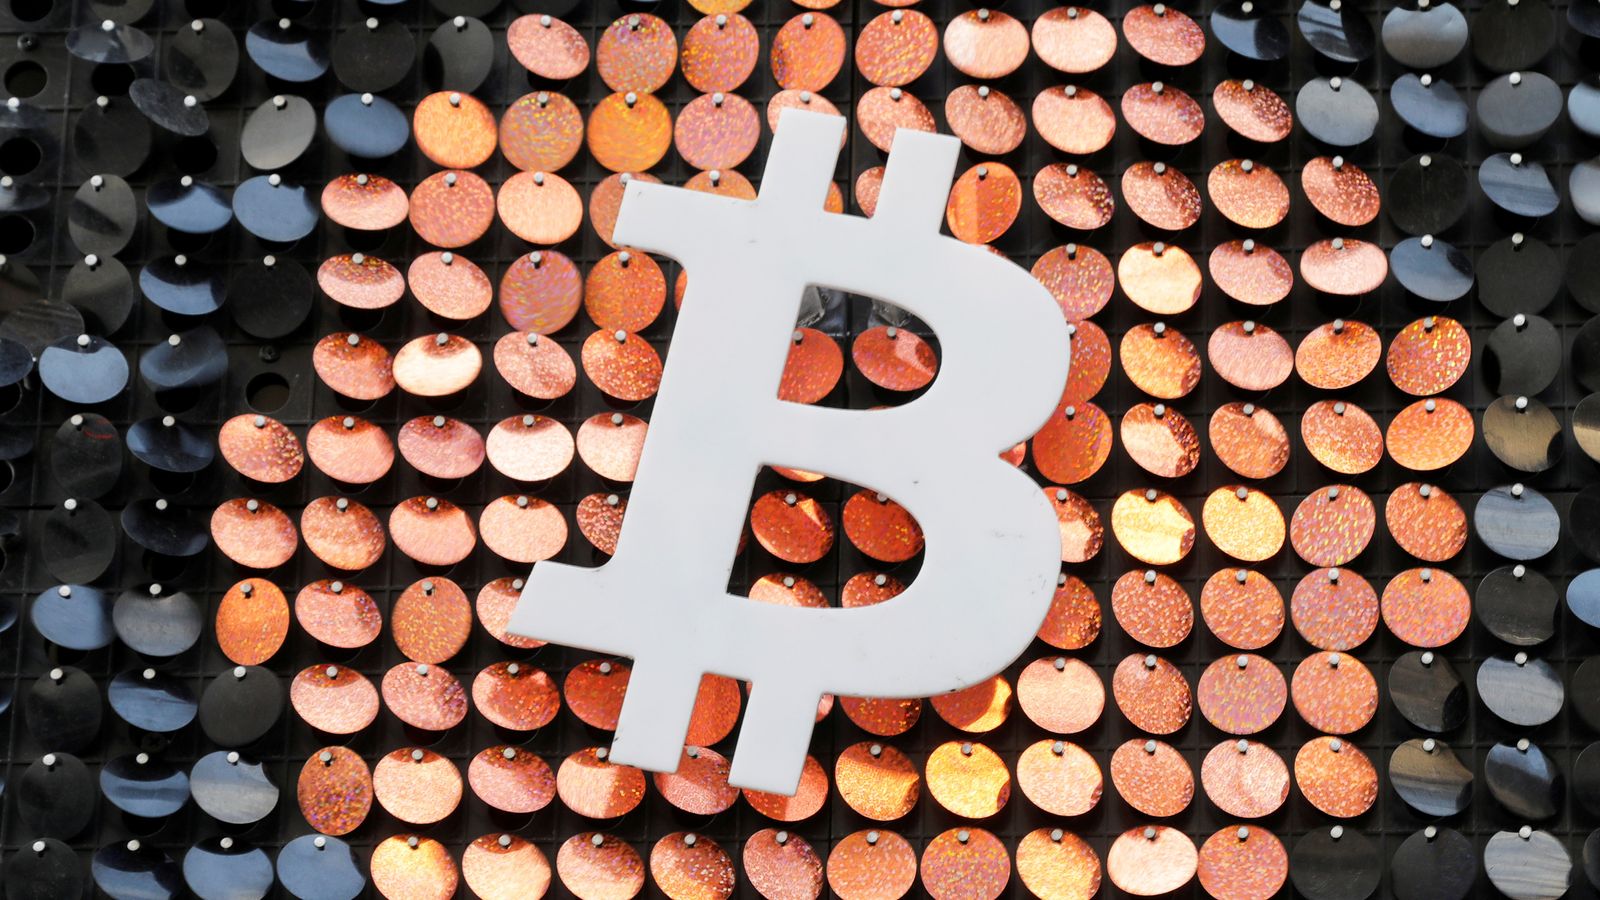 ic rinkos bitcoin trading akcijų rinka vs bitcoin